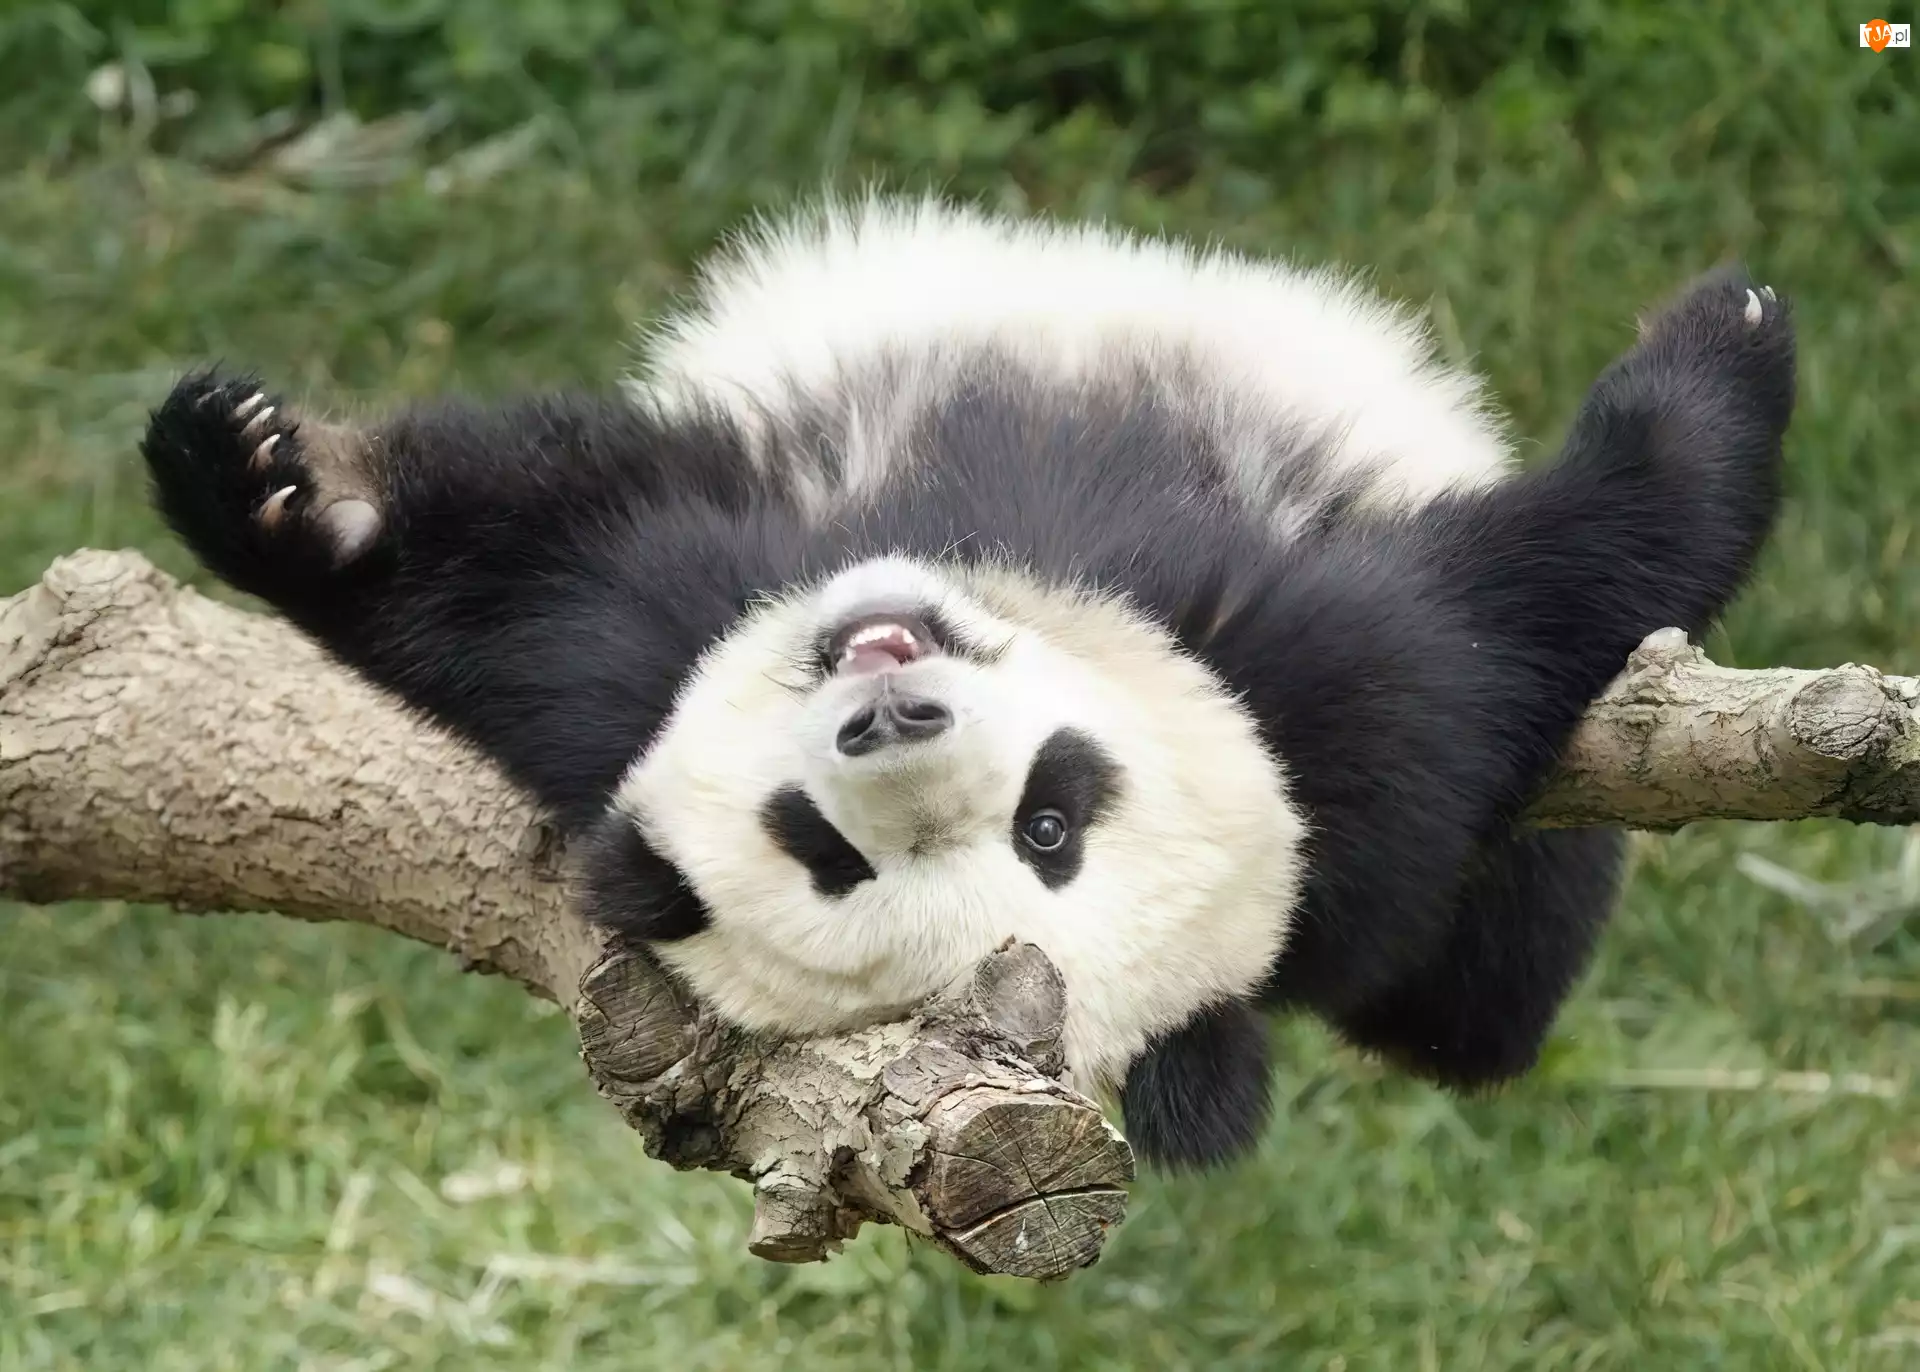 Leżakowanie, Panda, Drzewo